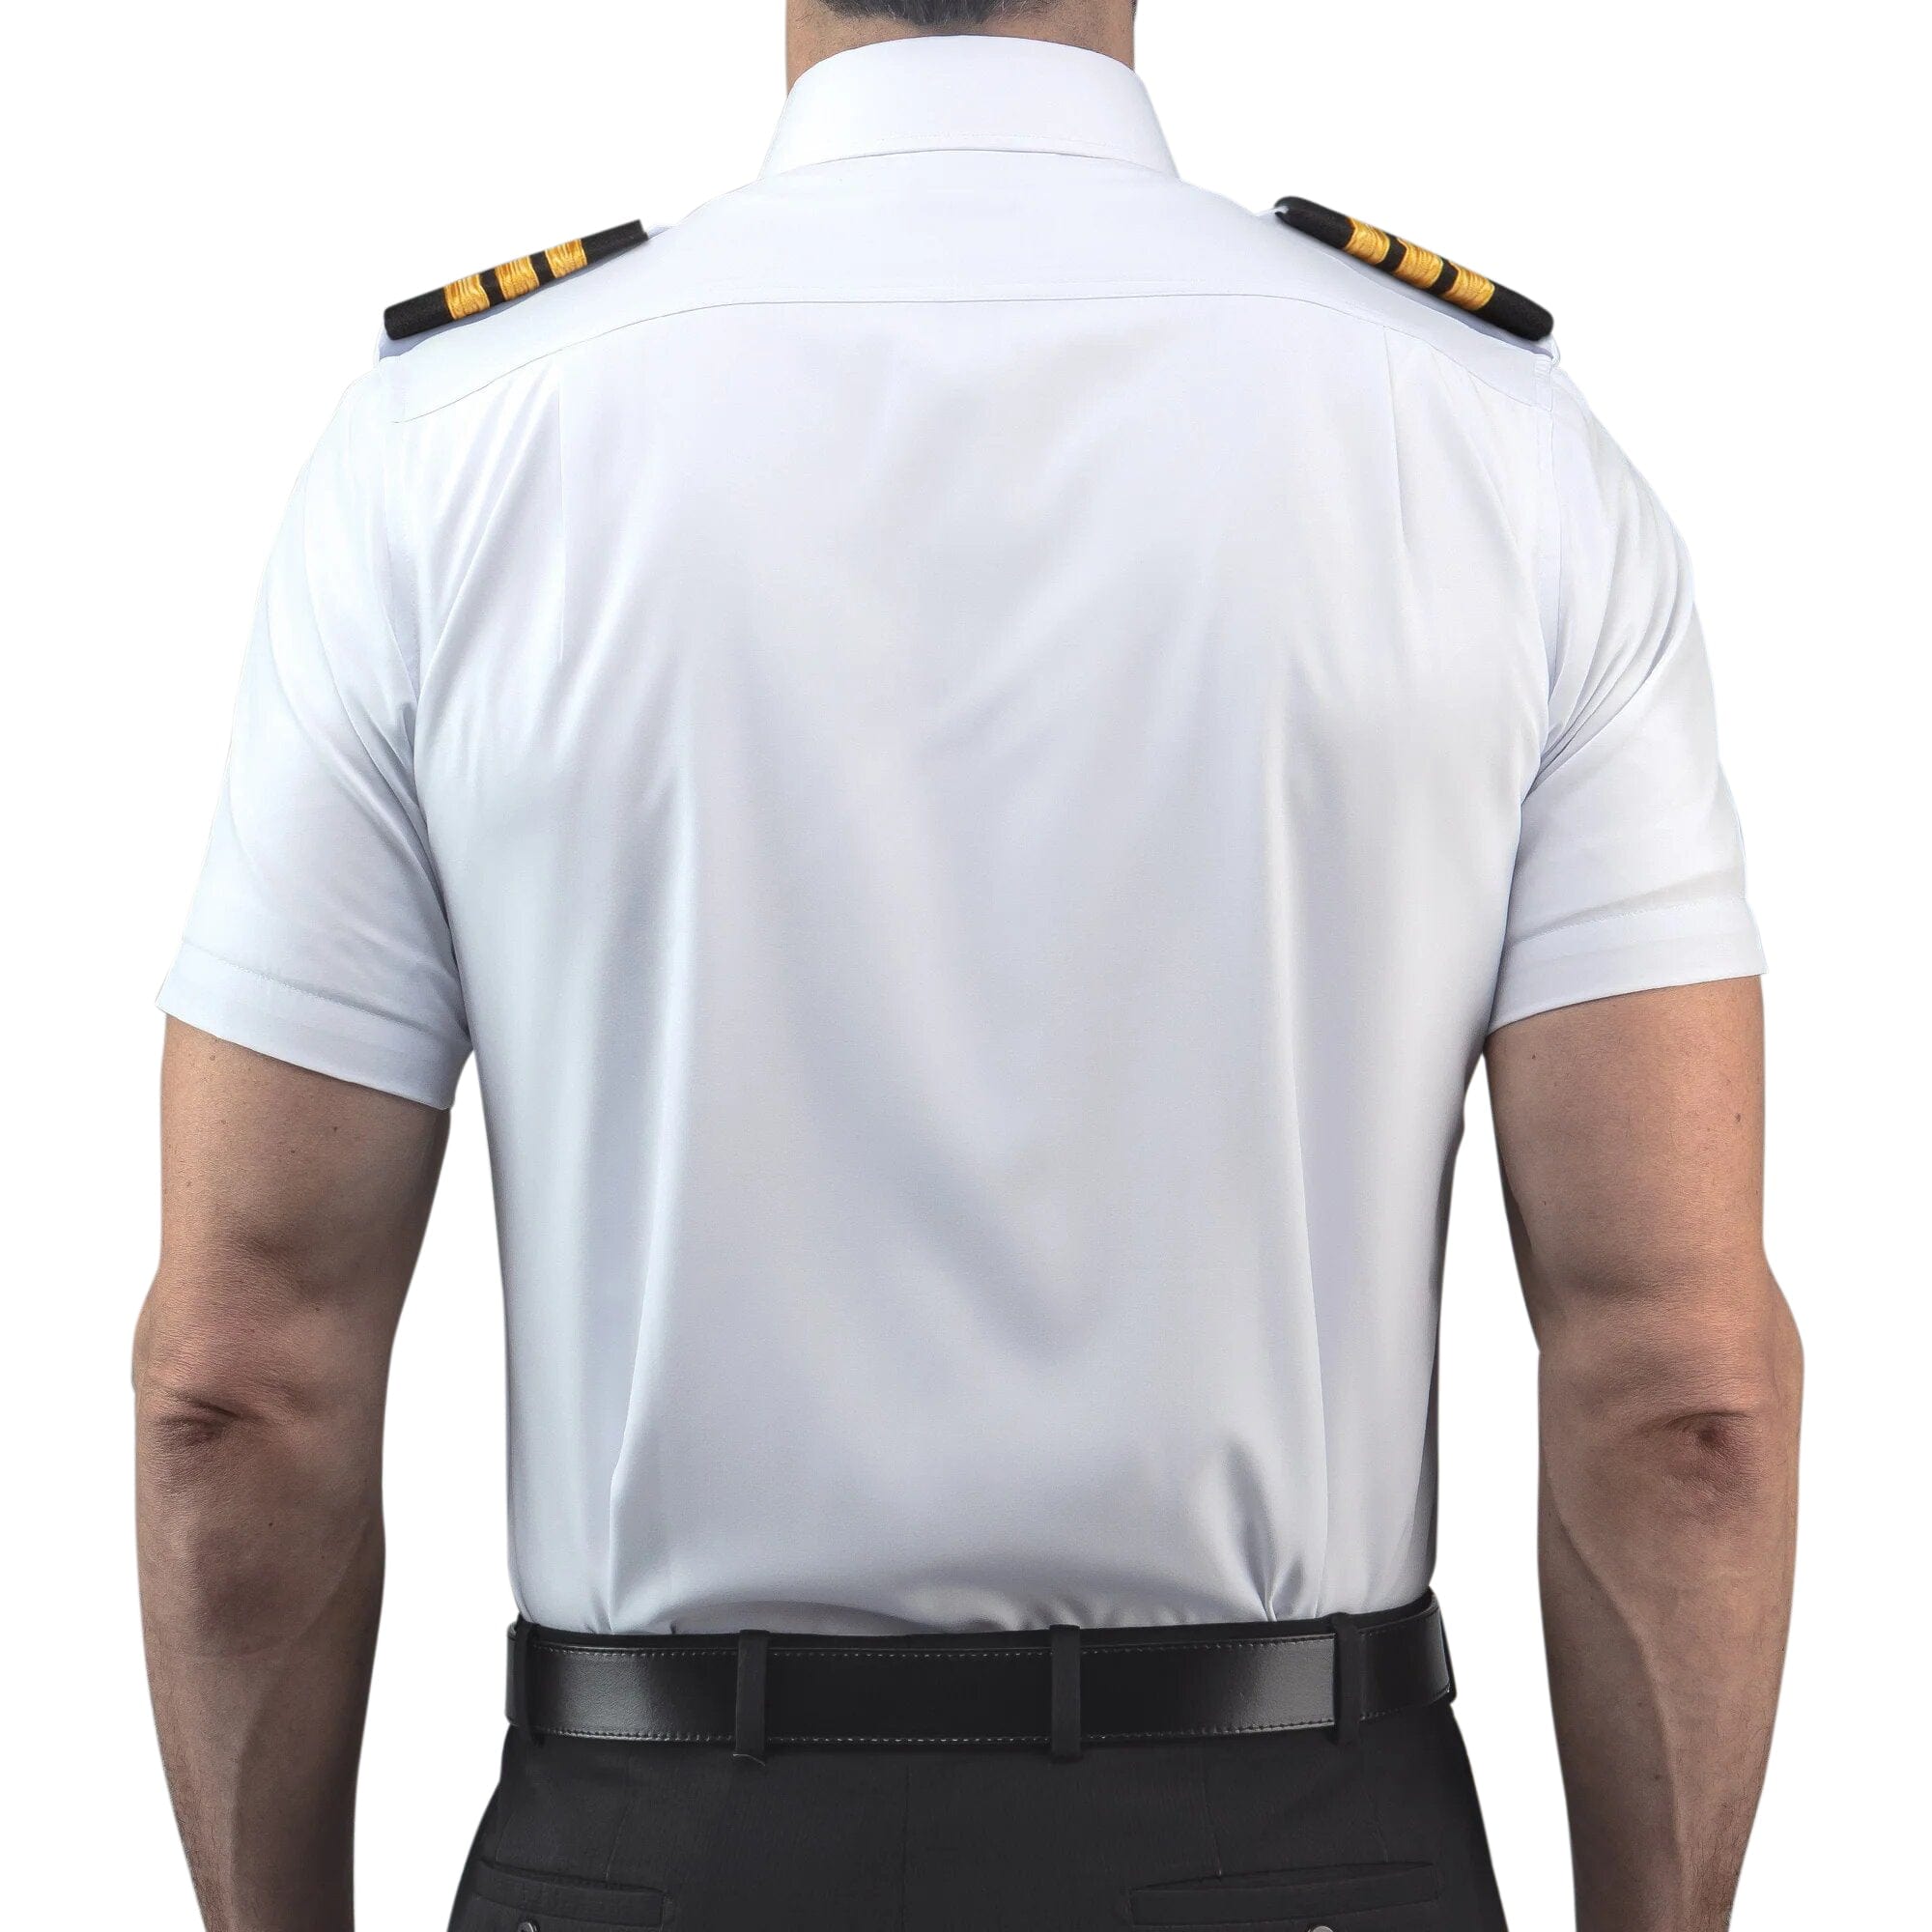 Lift Aviation Flextech Professional Pilot Short Sleeve Shirt